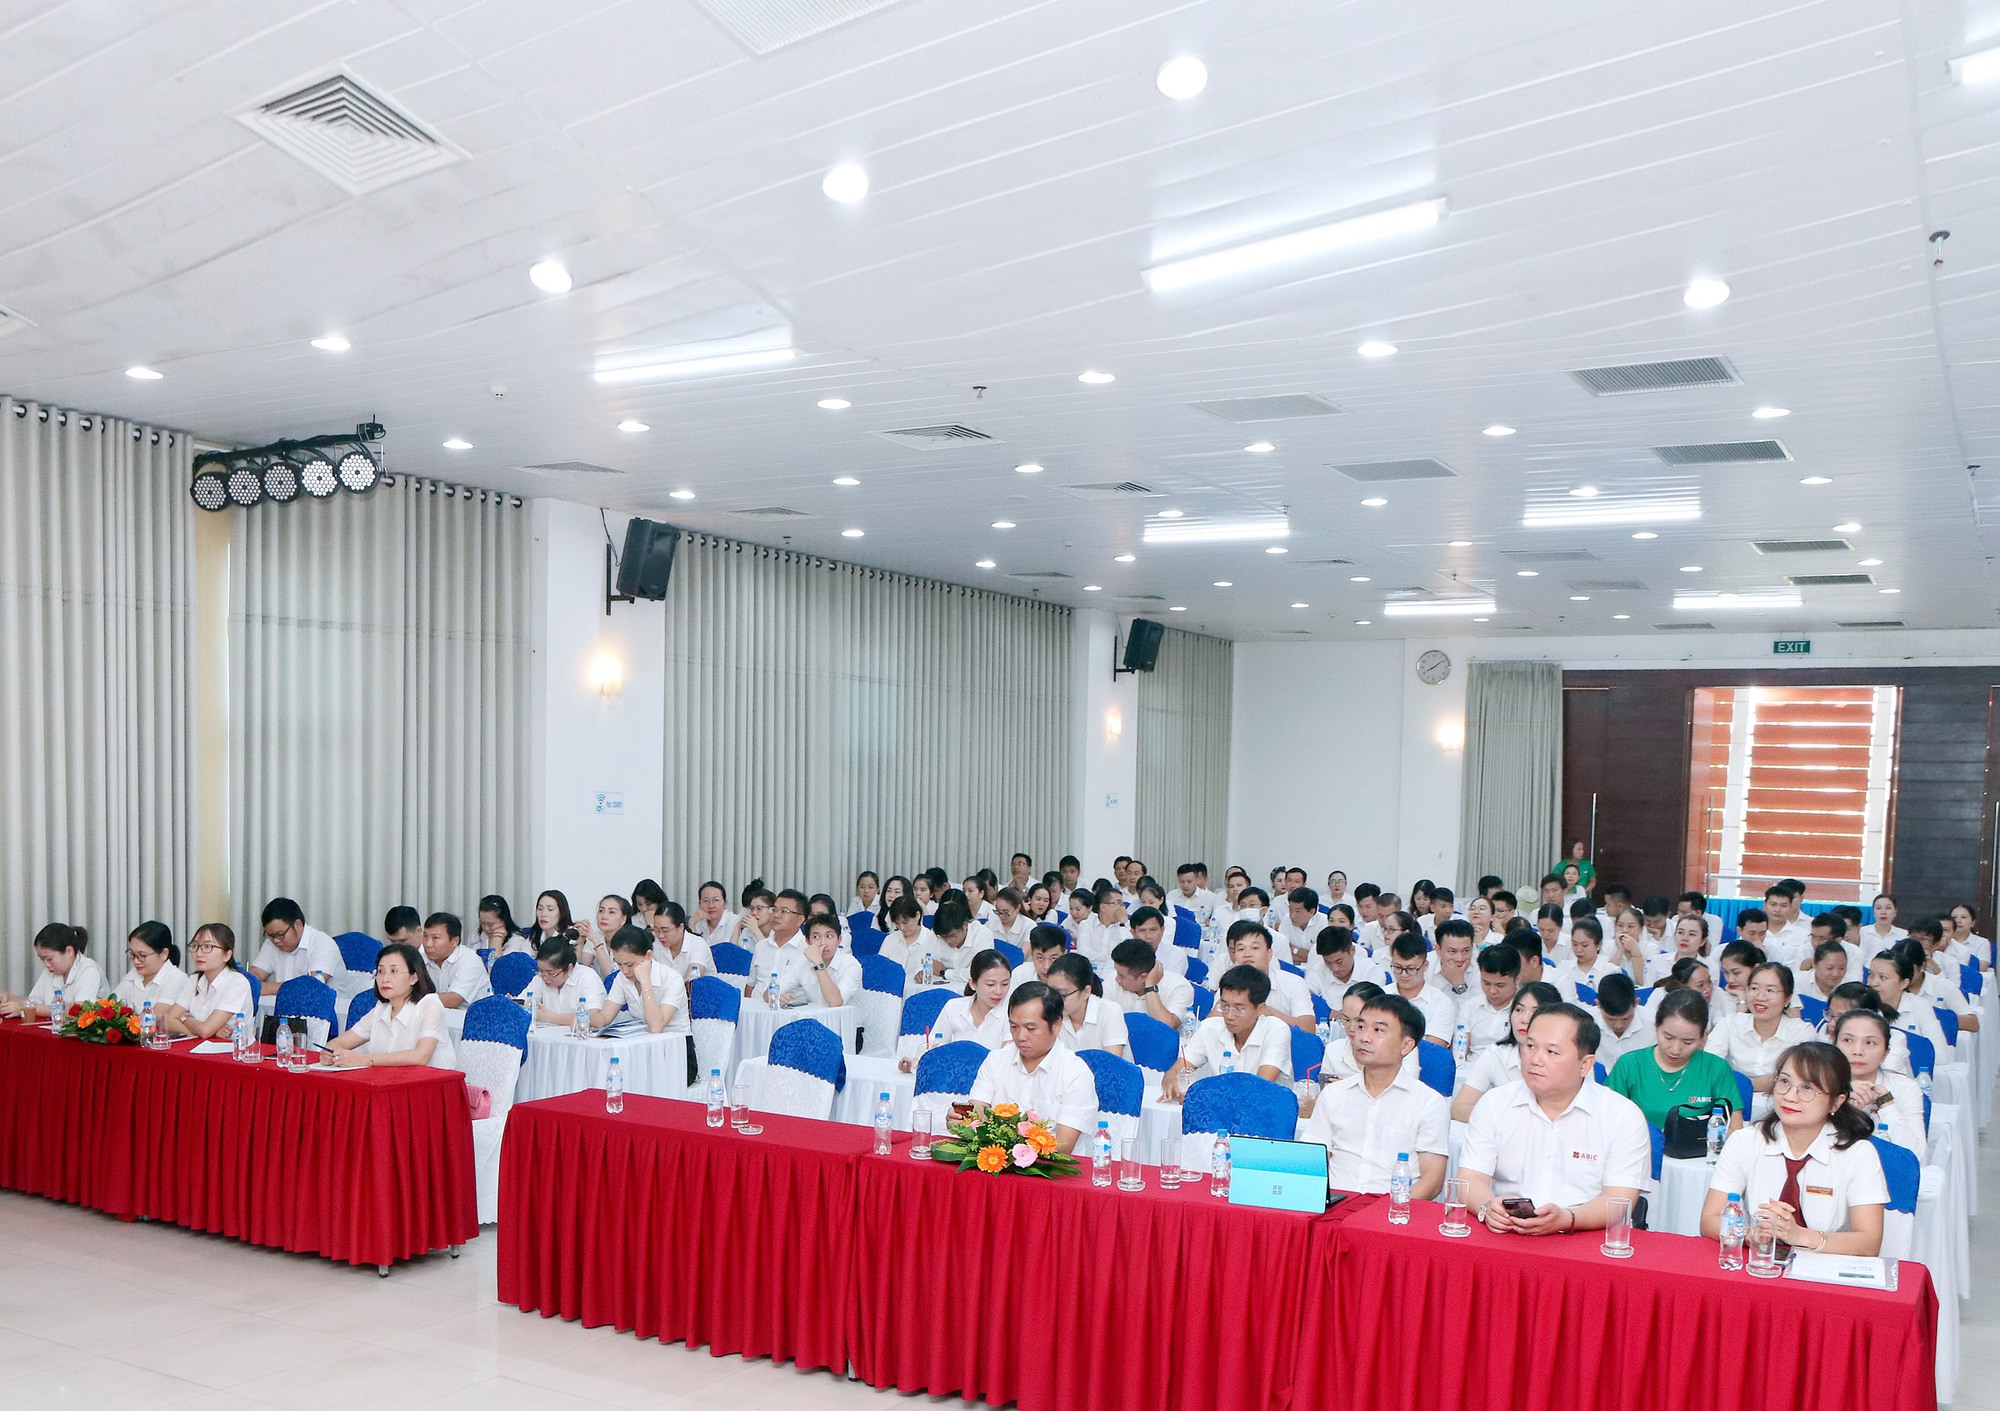 Bảo hiểm Agribank Đà Nẵng tổ chức hội nghị nâng cao kỹ năng, nghiệp vụ chăm sóc khách hàng - Ảnh 6.